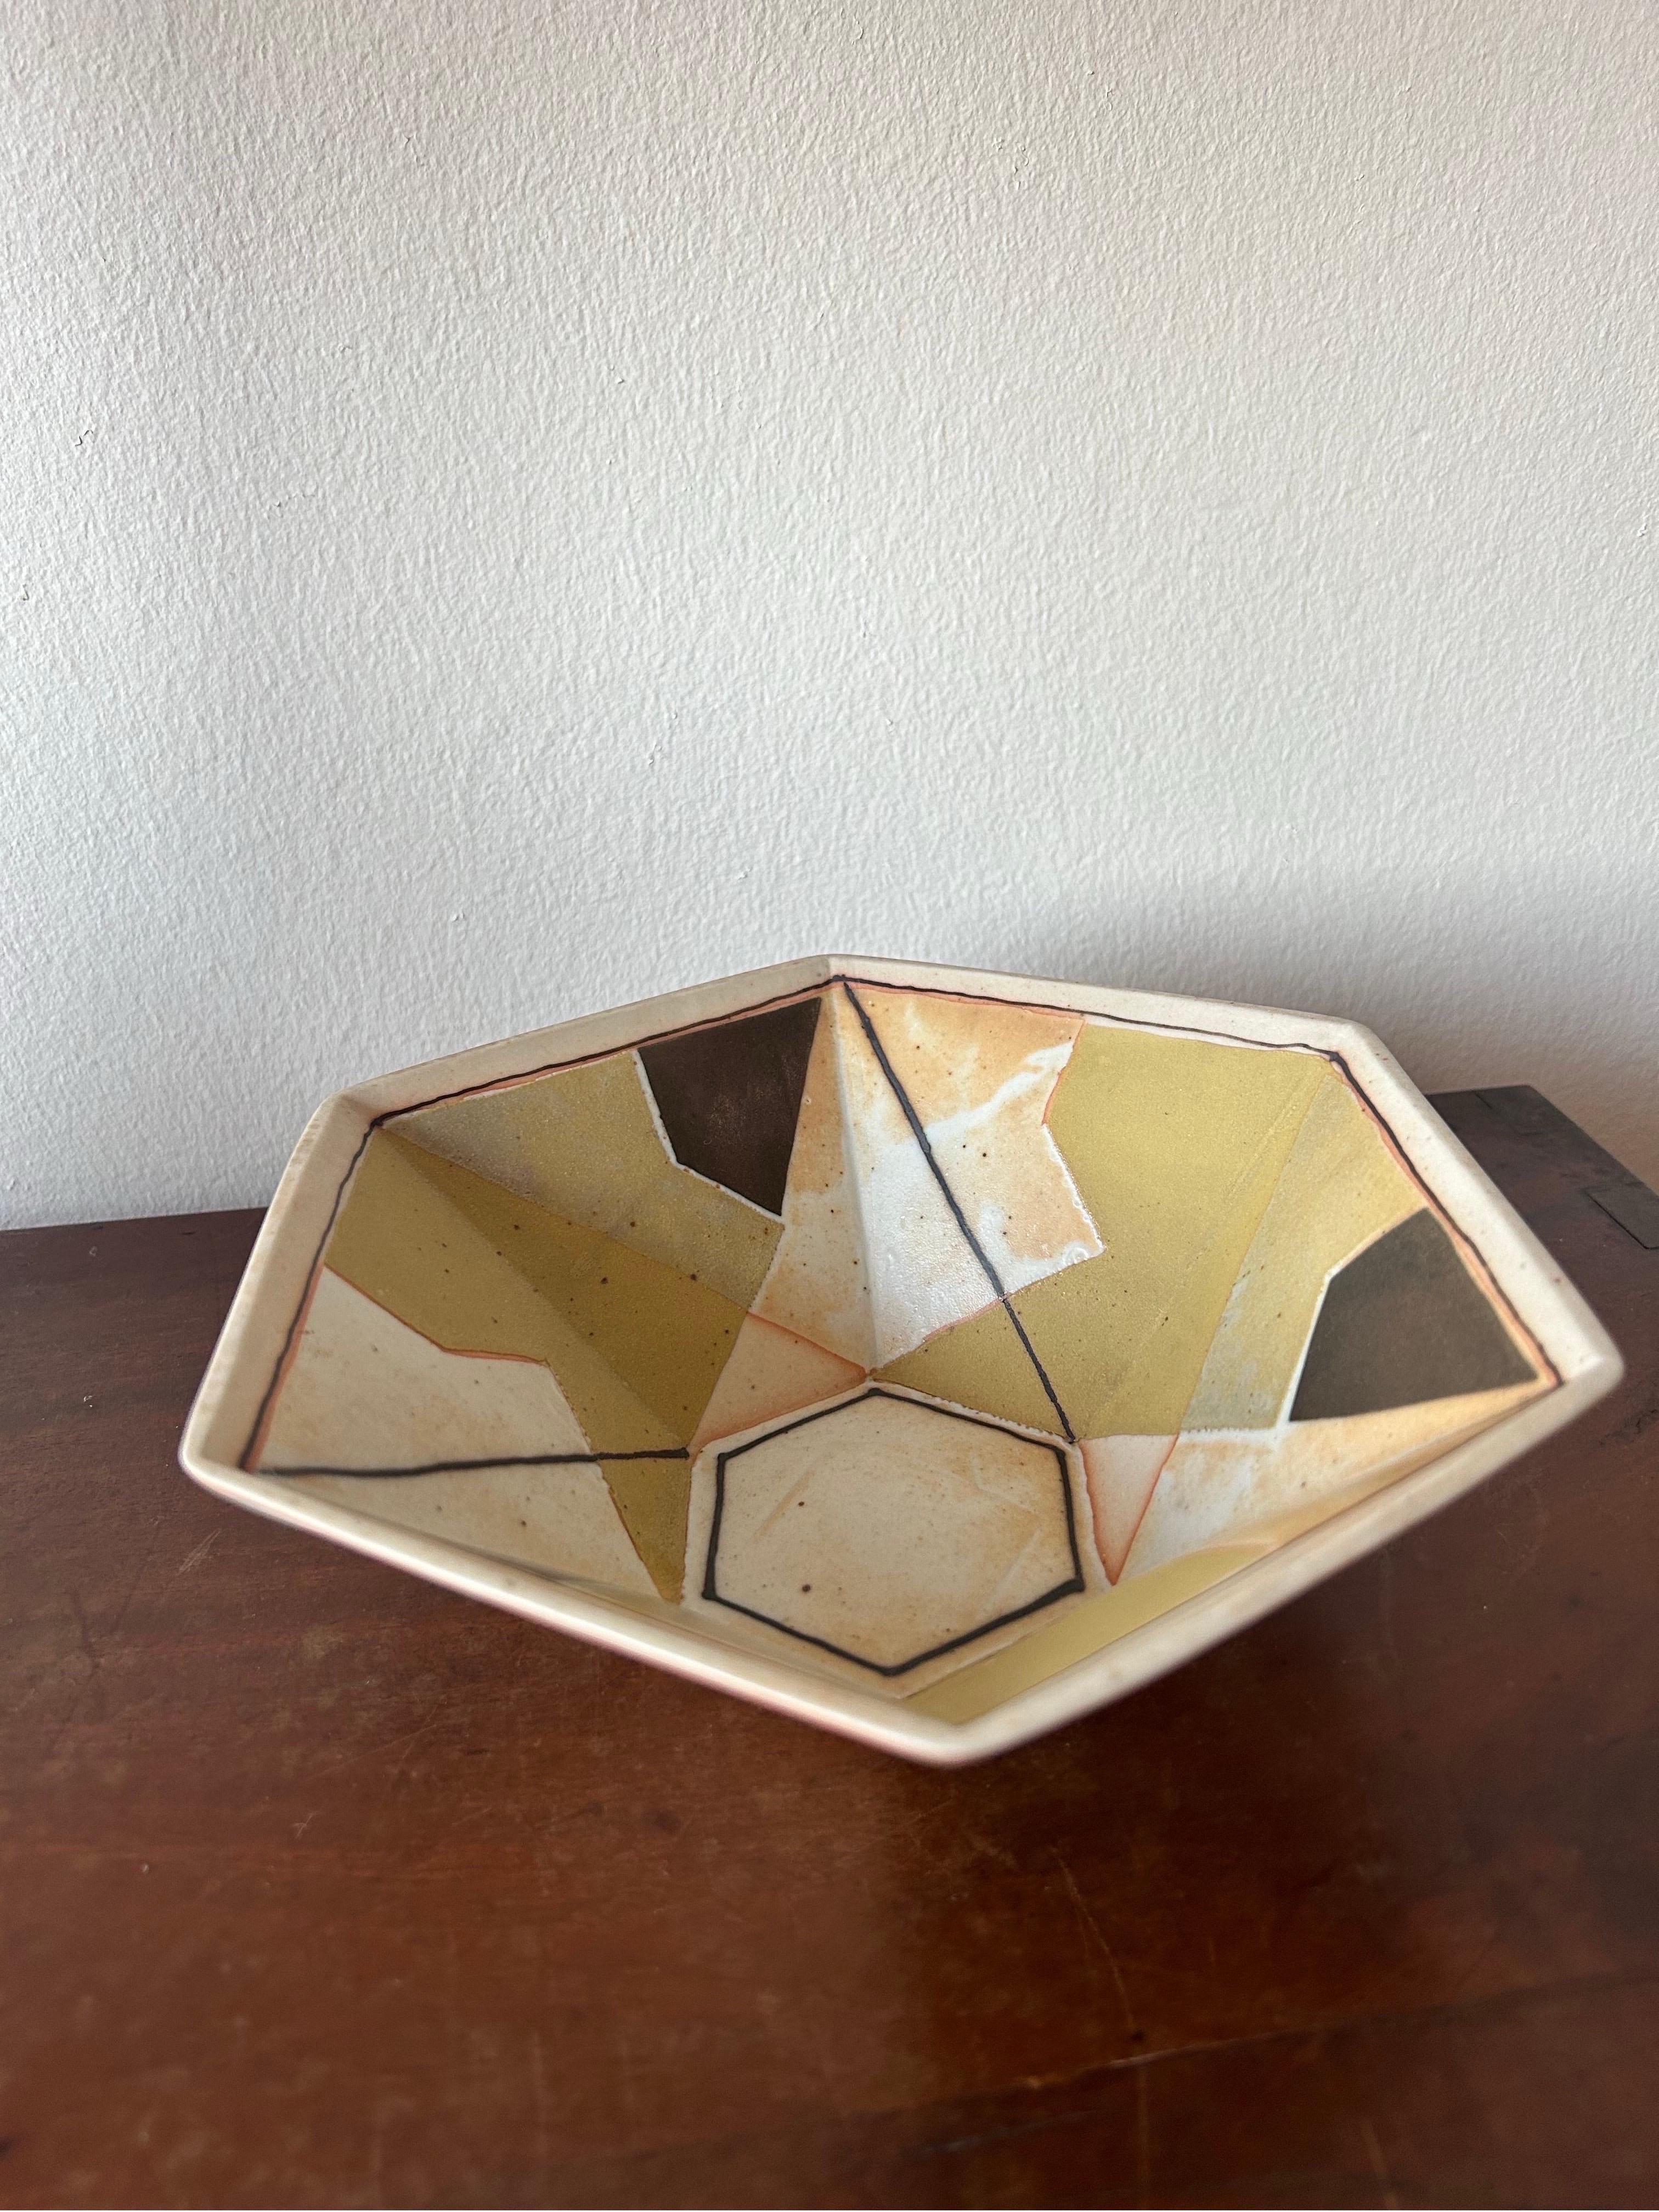 Seltene Bodil Manz Unique Bowl, hergestellt in Dänemark in den 1980er Jahren.
Die Schale ist aus glasiertem Porzellan mit einer tollen Struktur in verschiedenen Ebenen.

Die Keramikerin Bodil Manz schloss 1965 die Kunstgewerbeschule ab und lernte in